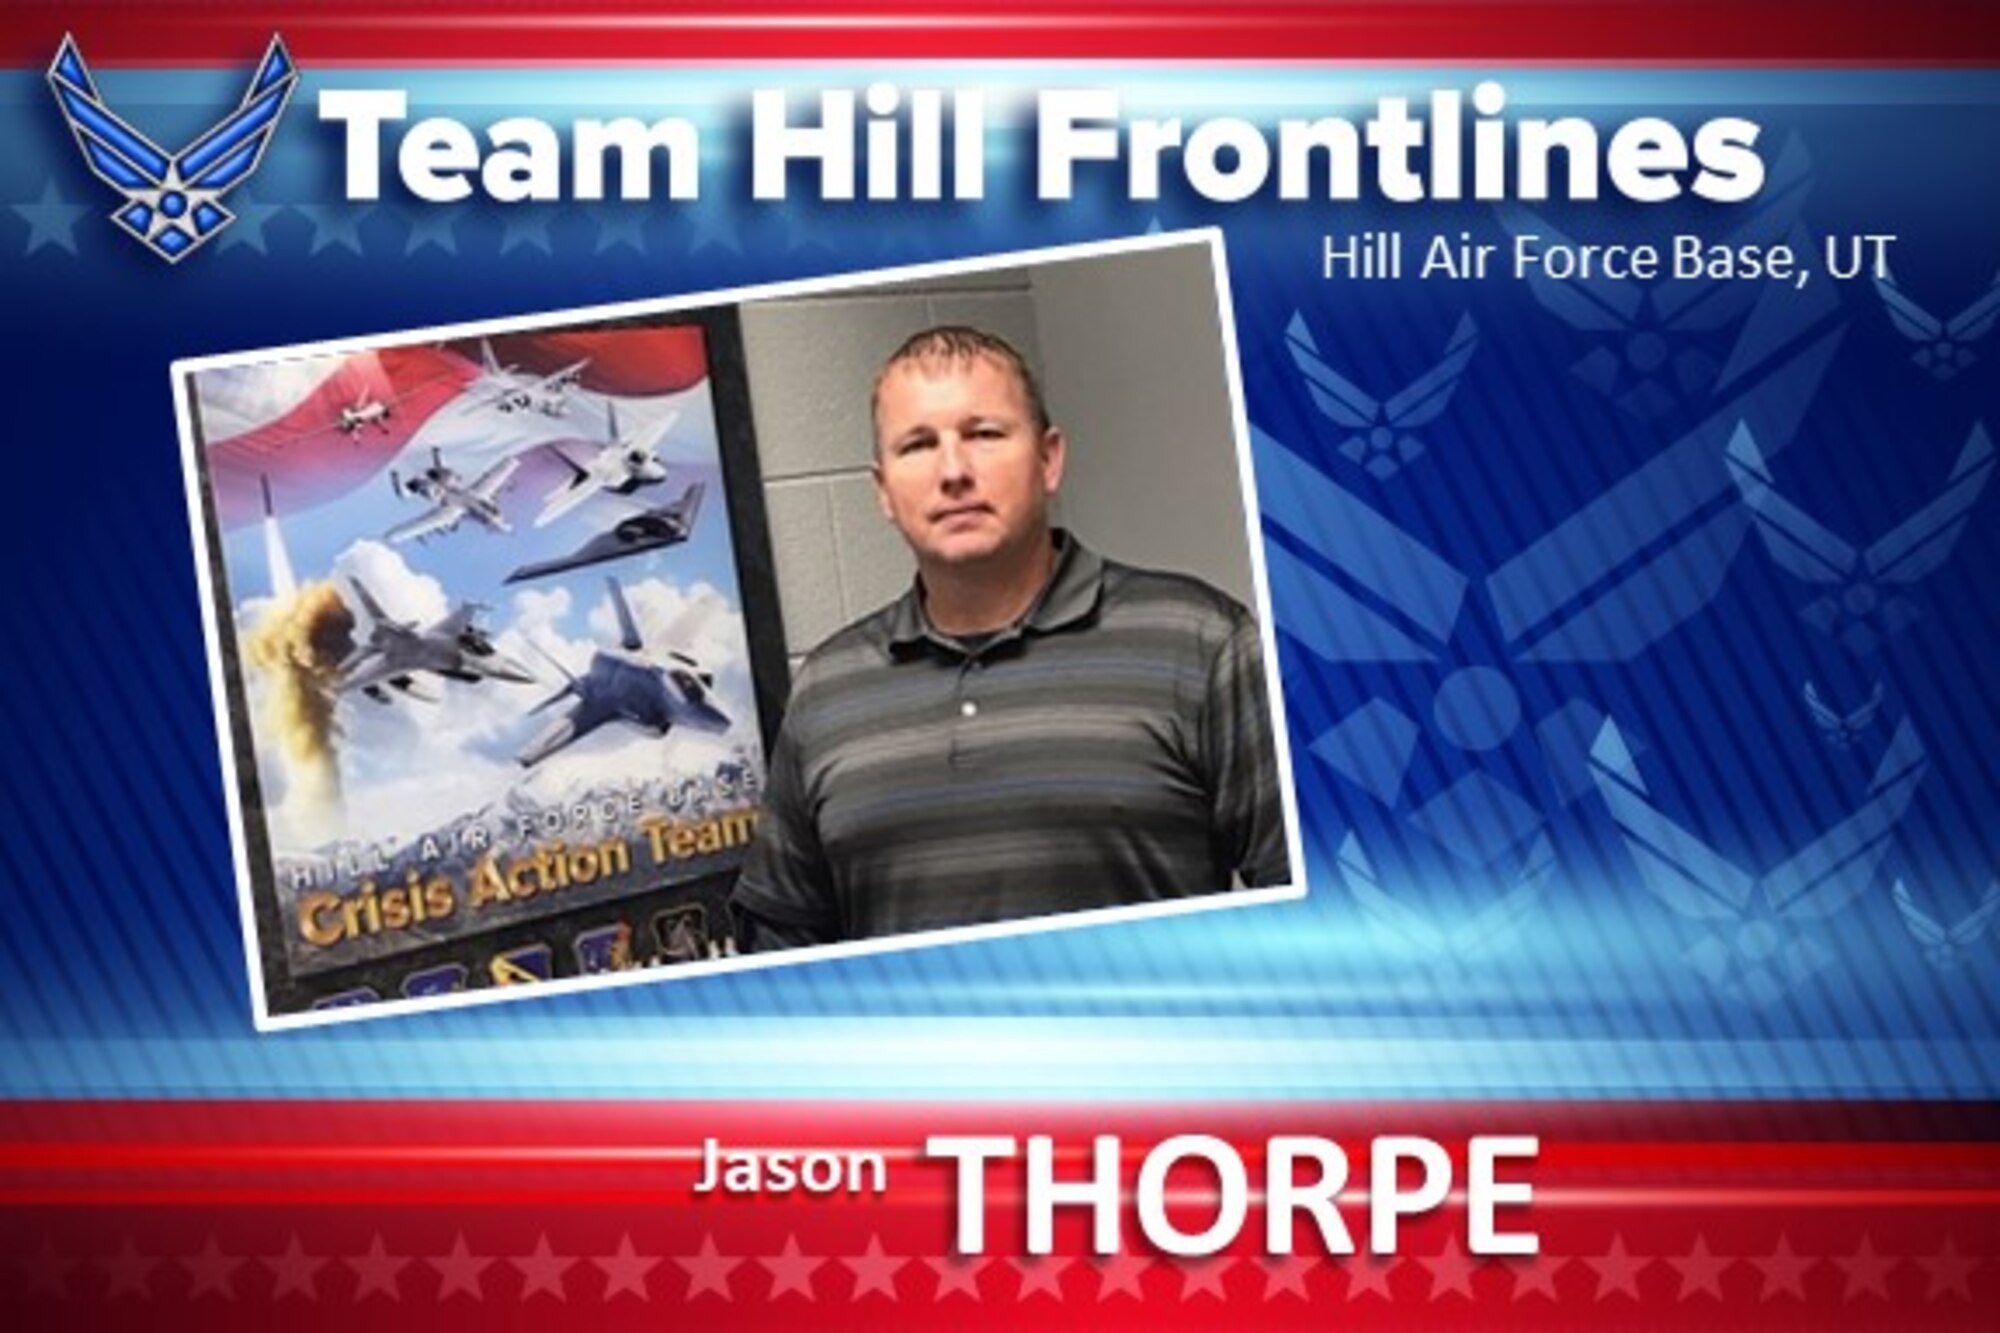 Team Hill Frontlines: Jason Thorpe